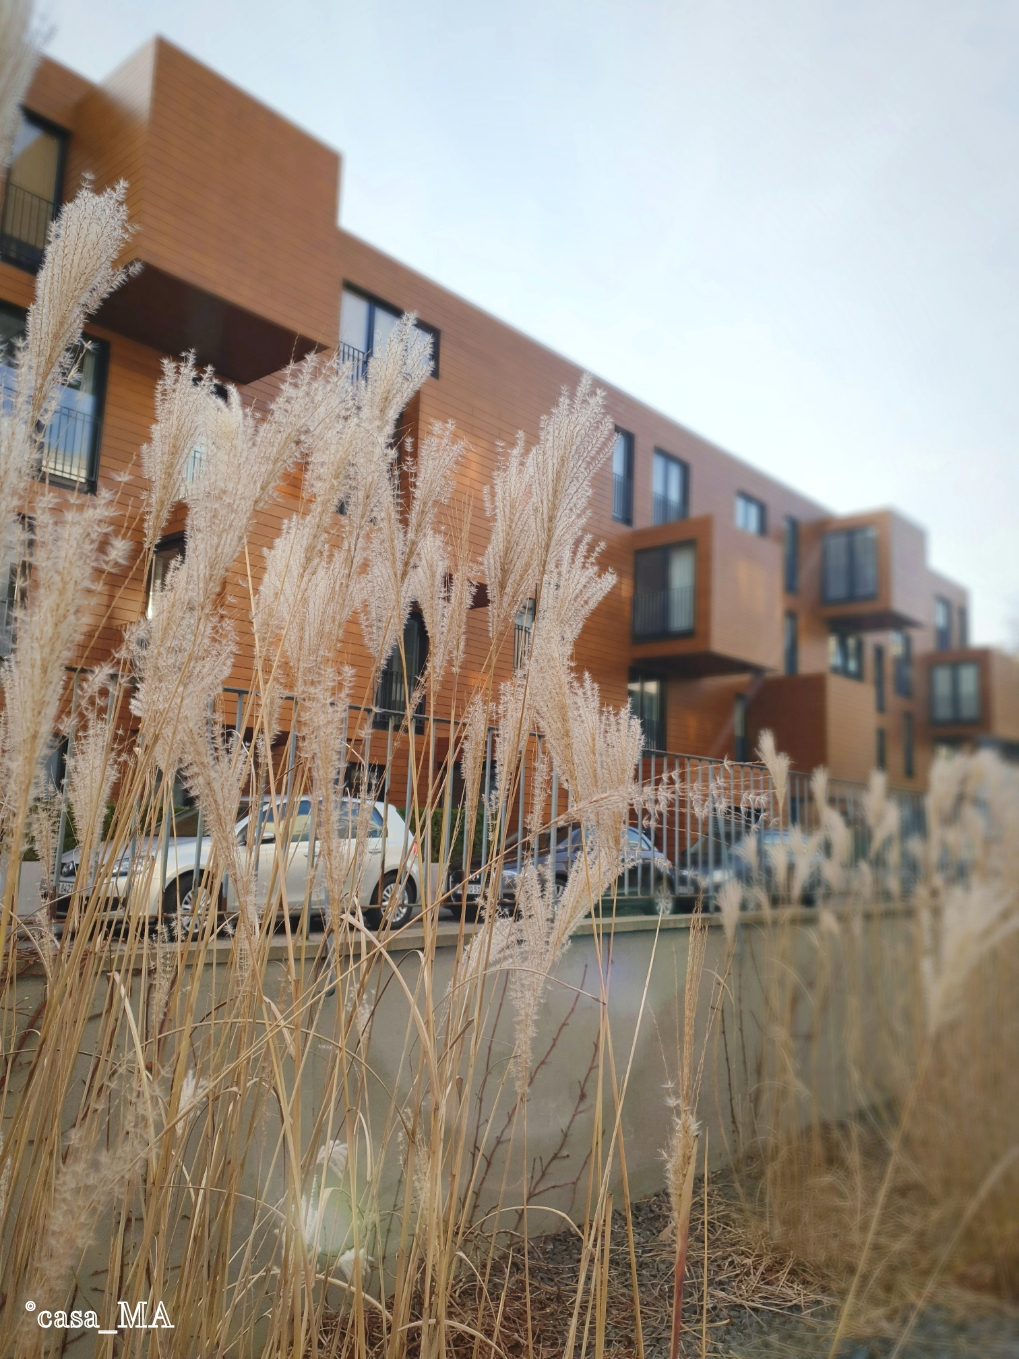 Gute Nachbarn! #architektur #gräser #fassade